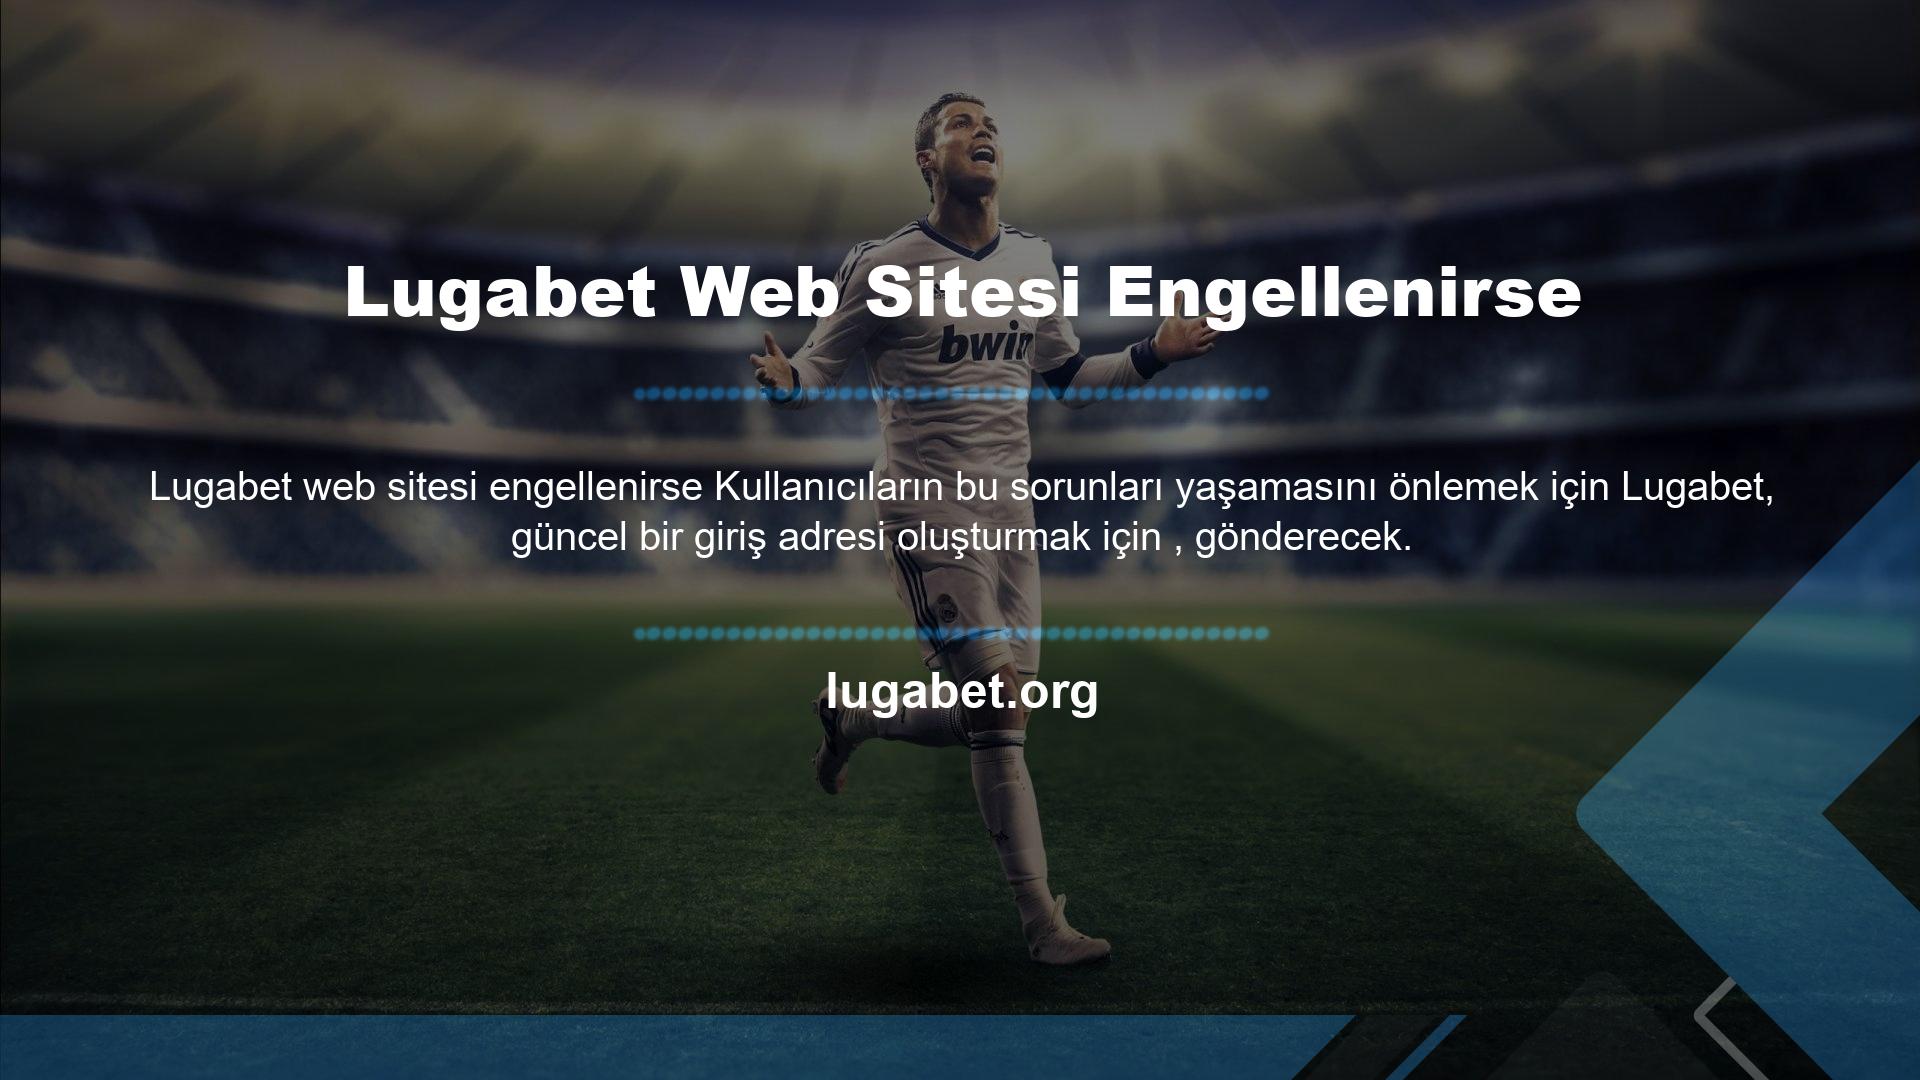 Çok gelişmiş bir algoritmaya sahip olduğu için genellikle Lugabet Web Sitesi Engellenirse dikkat çeker